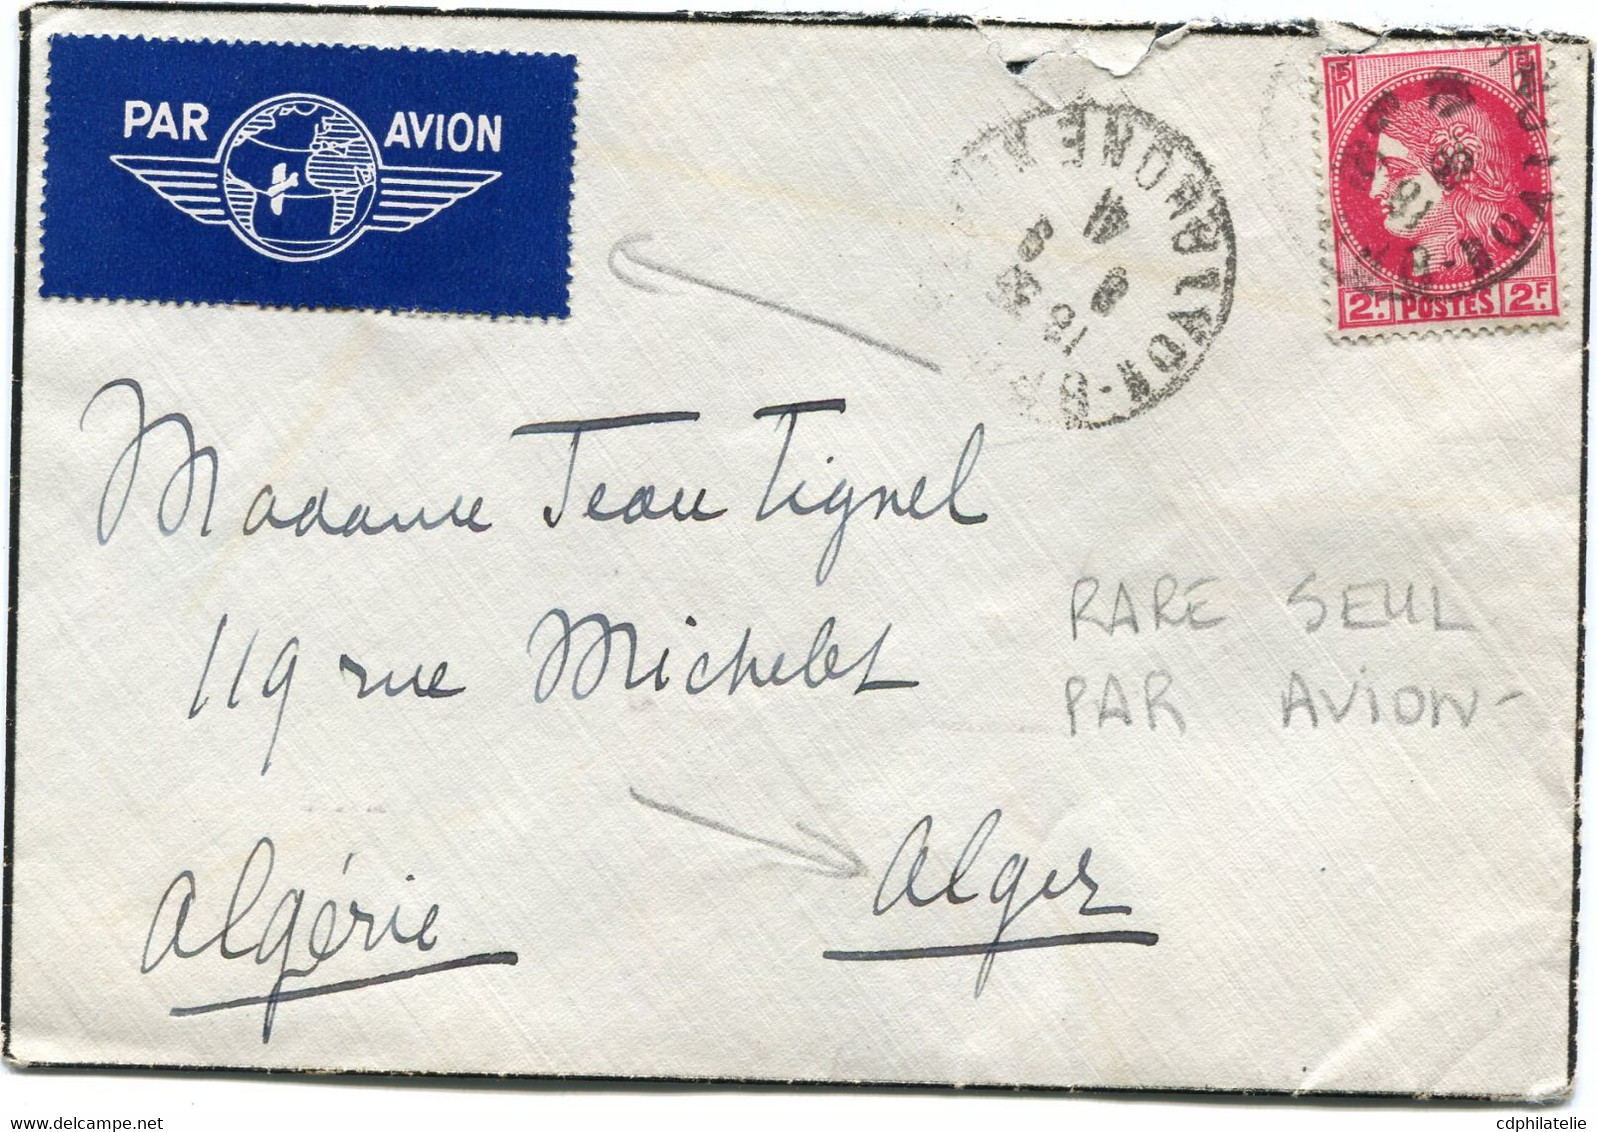 FRANCE LETTRE PAR AVION DEPART LYON-? 8-9-41 RHONE POUR L'ALGERIE - 1945-47 Ceres Of Mazelin